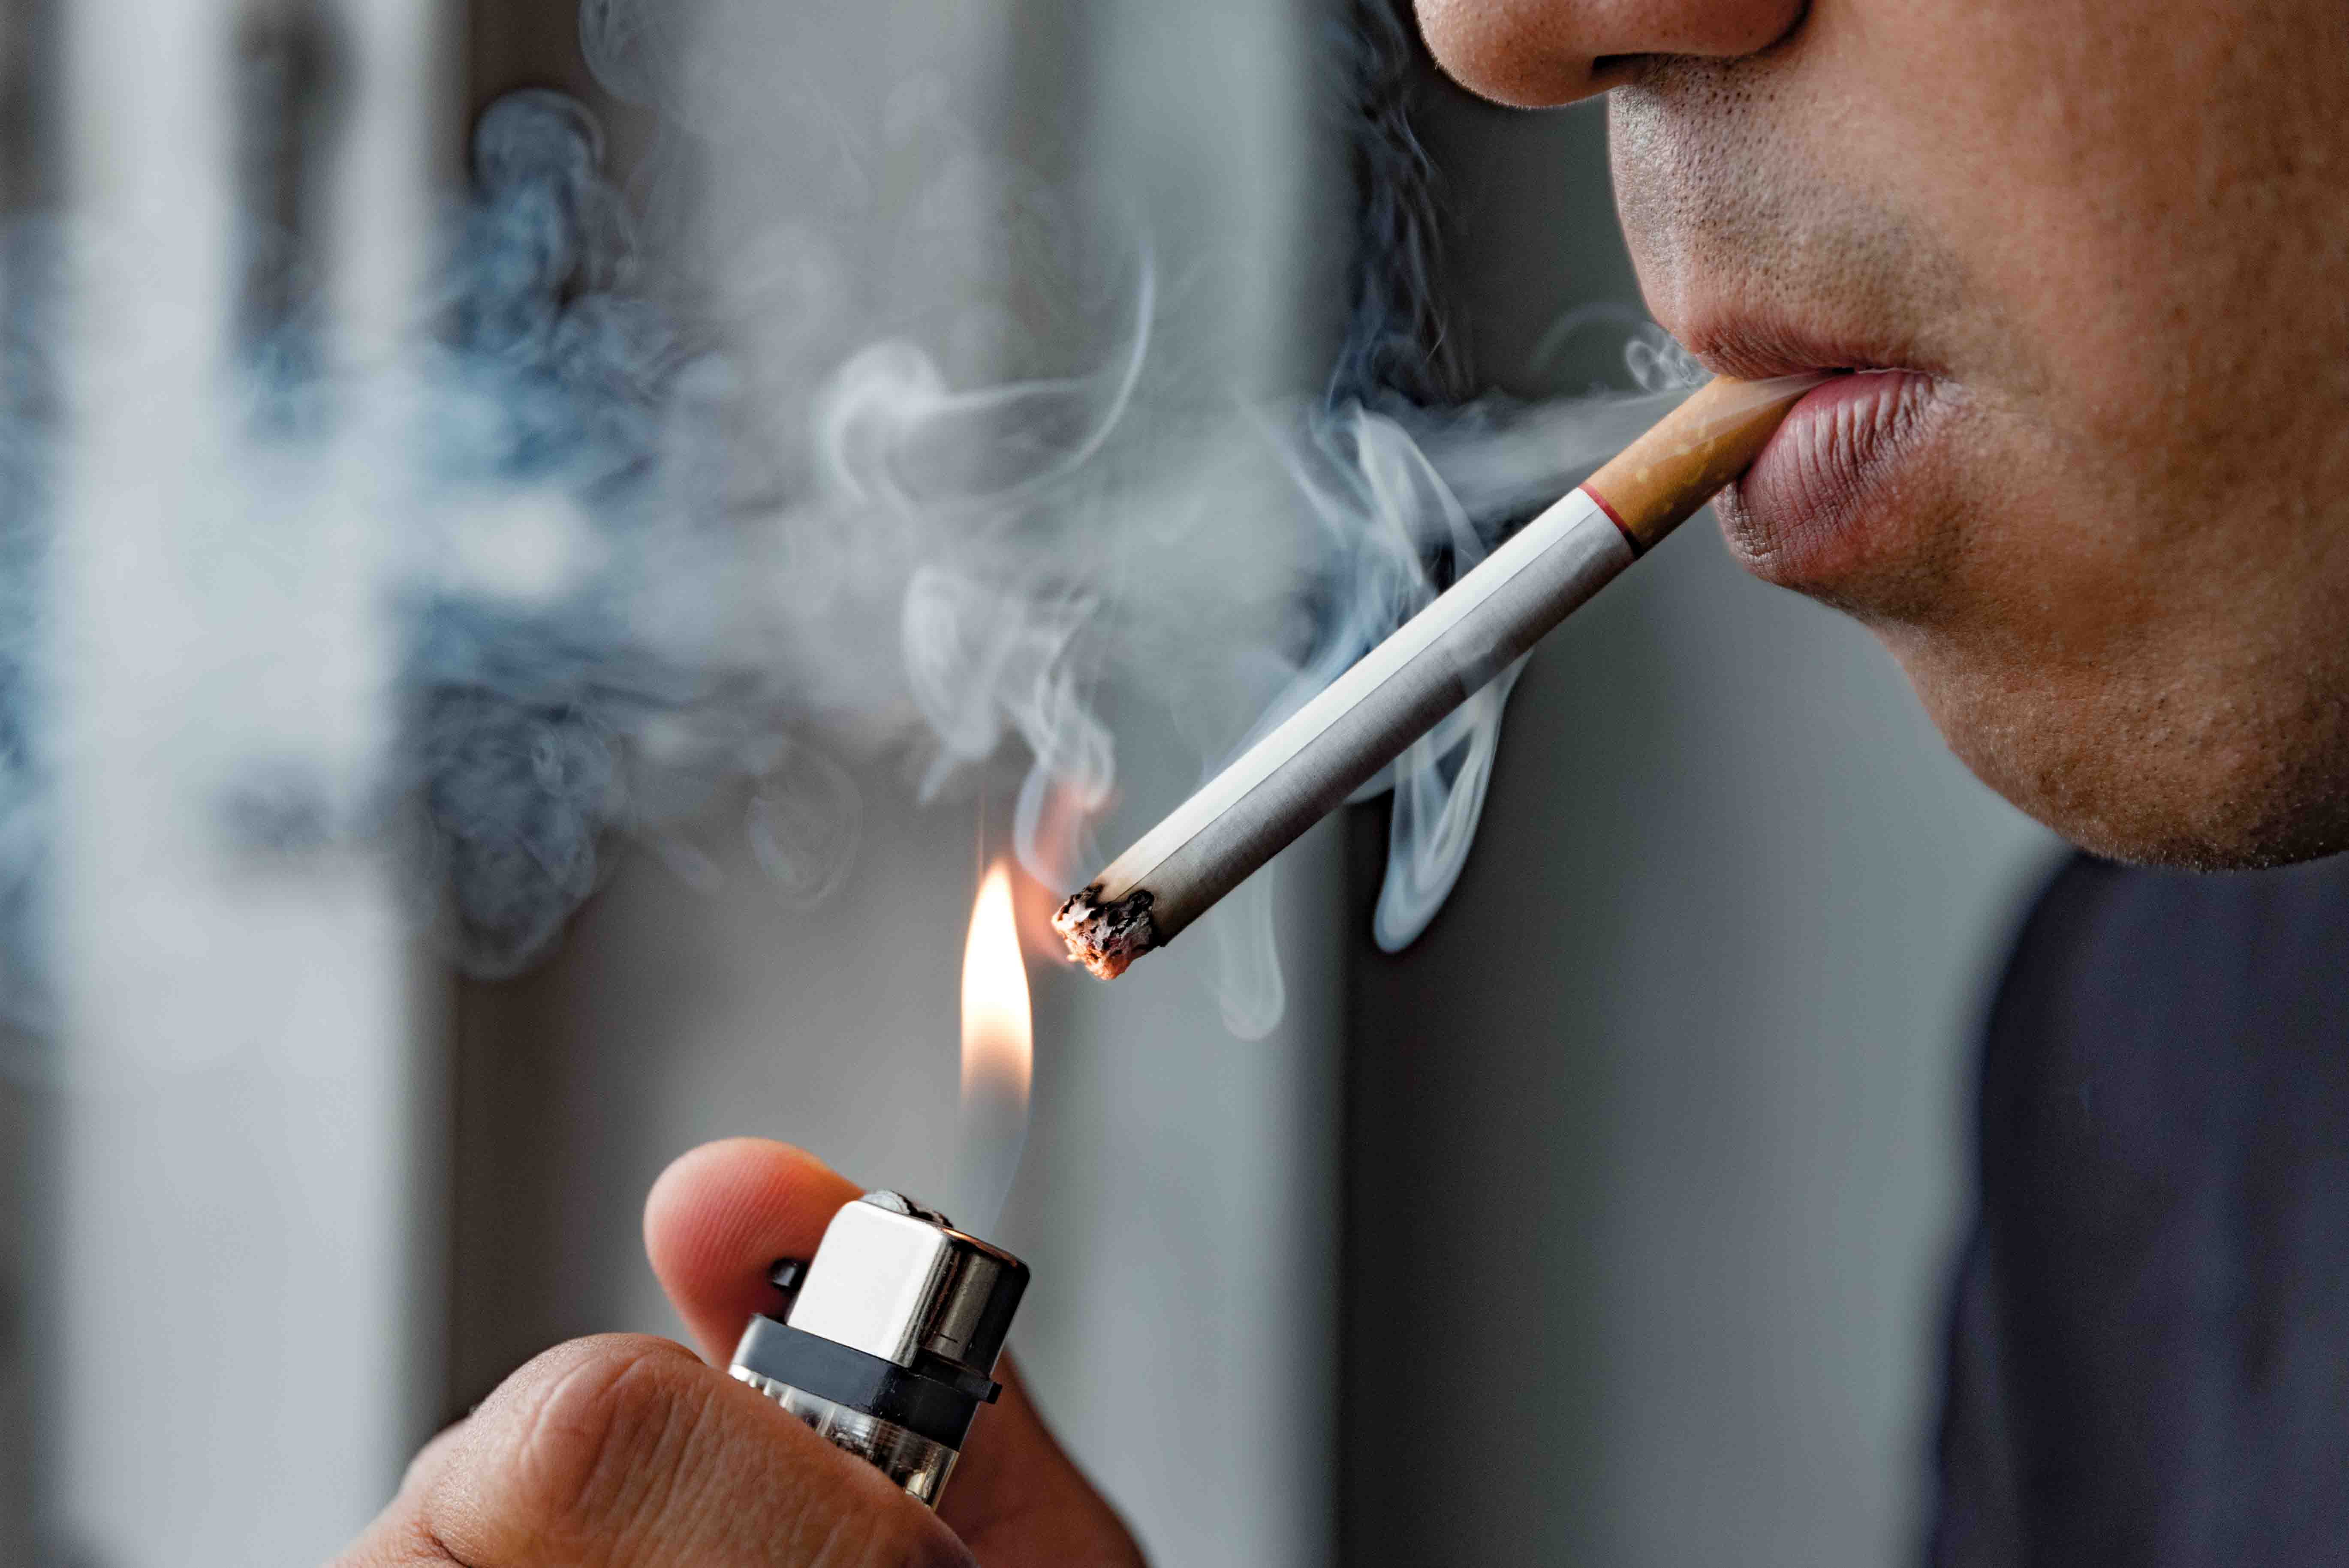 Multinational Tubaksfirmen kënnen de russesche Maart net einfach opginn